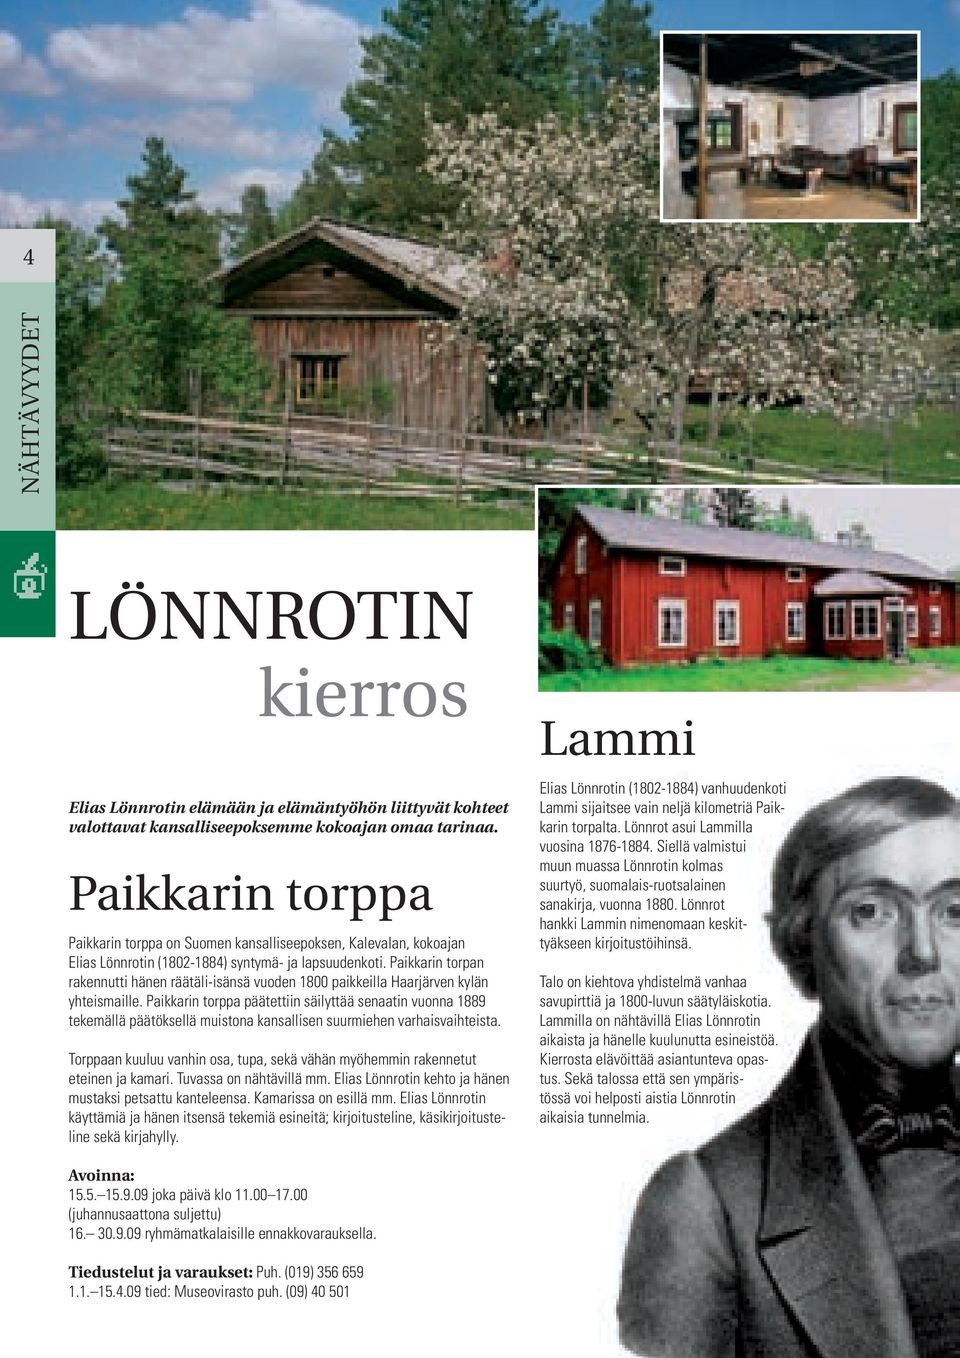 Paikkarin torpan rakennutti hänen räätäli-isänsä vuoden 1800 paikkeilla Haarjärven kylän yhteismaille.